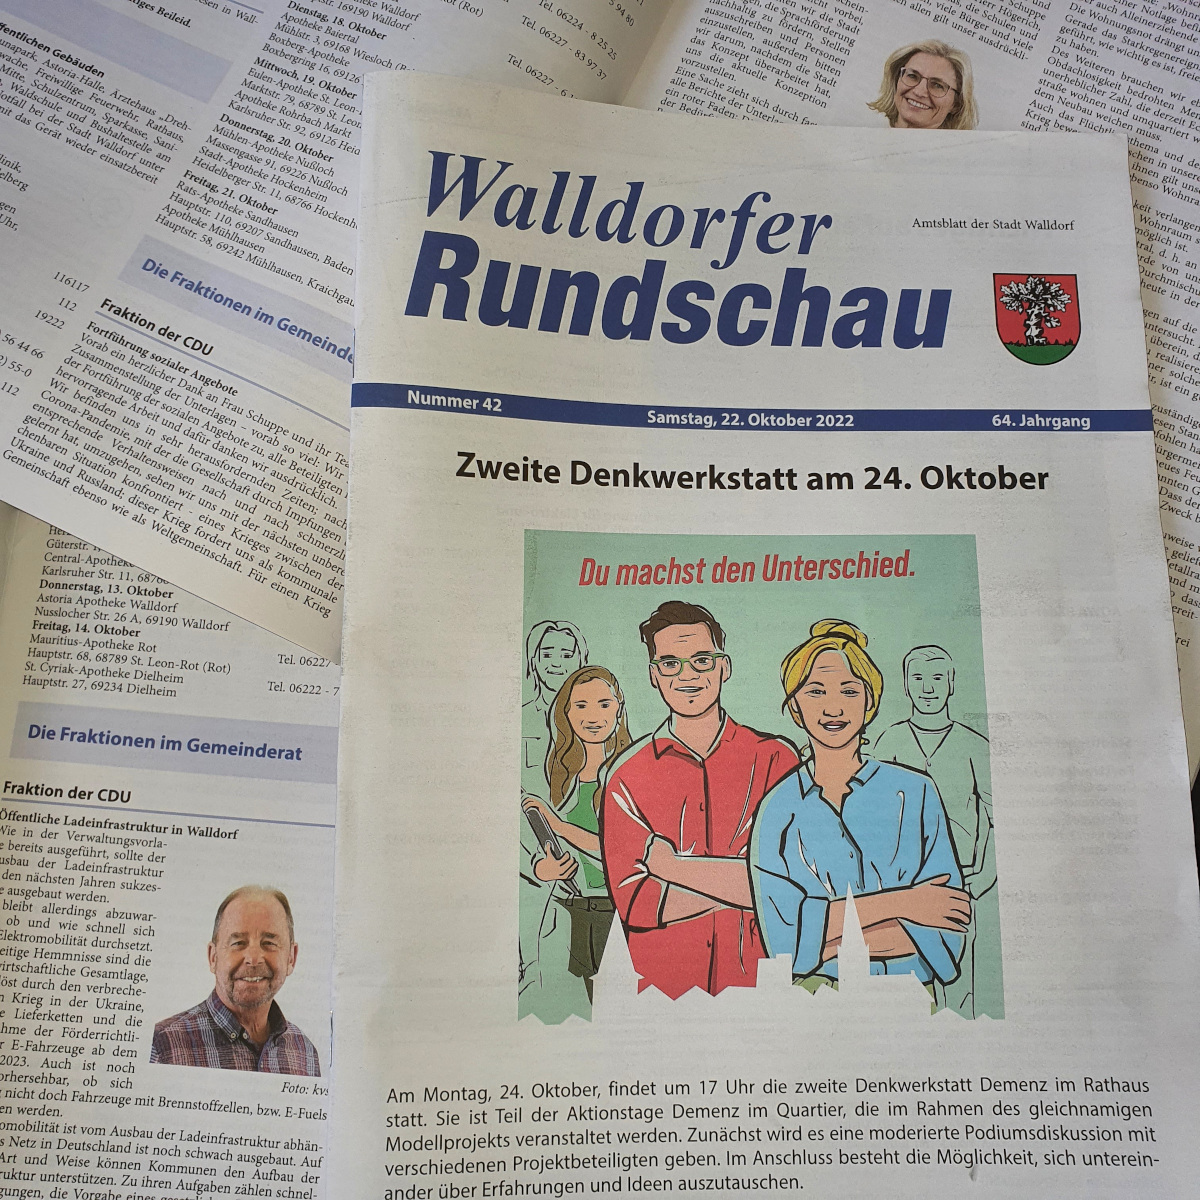 Die Walldorfer Rundschau 2022 Nr. 42 | Foto: Dr. Clemens Kriesel